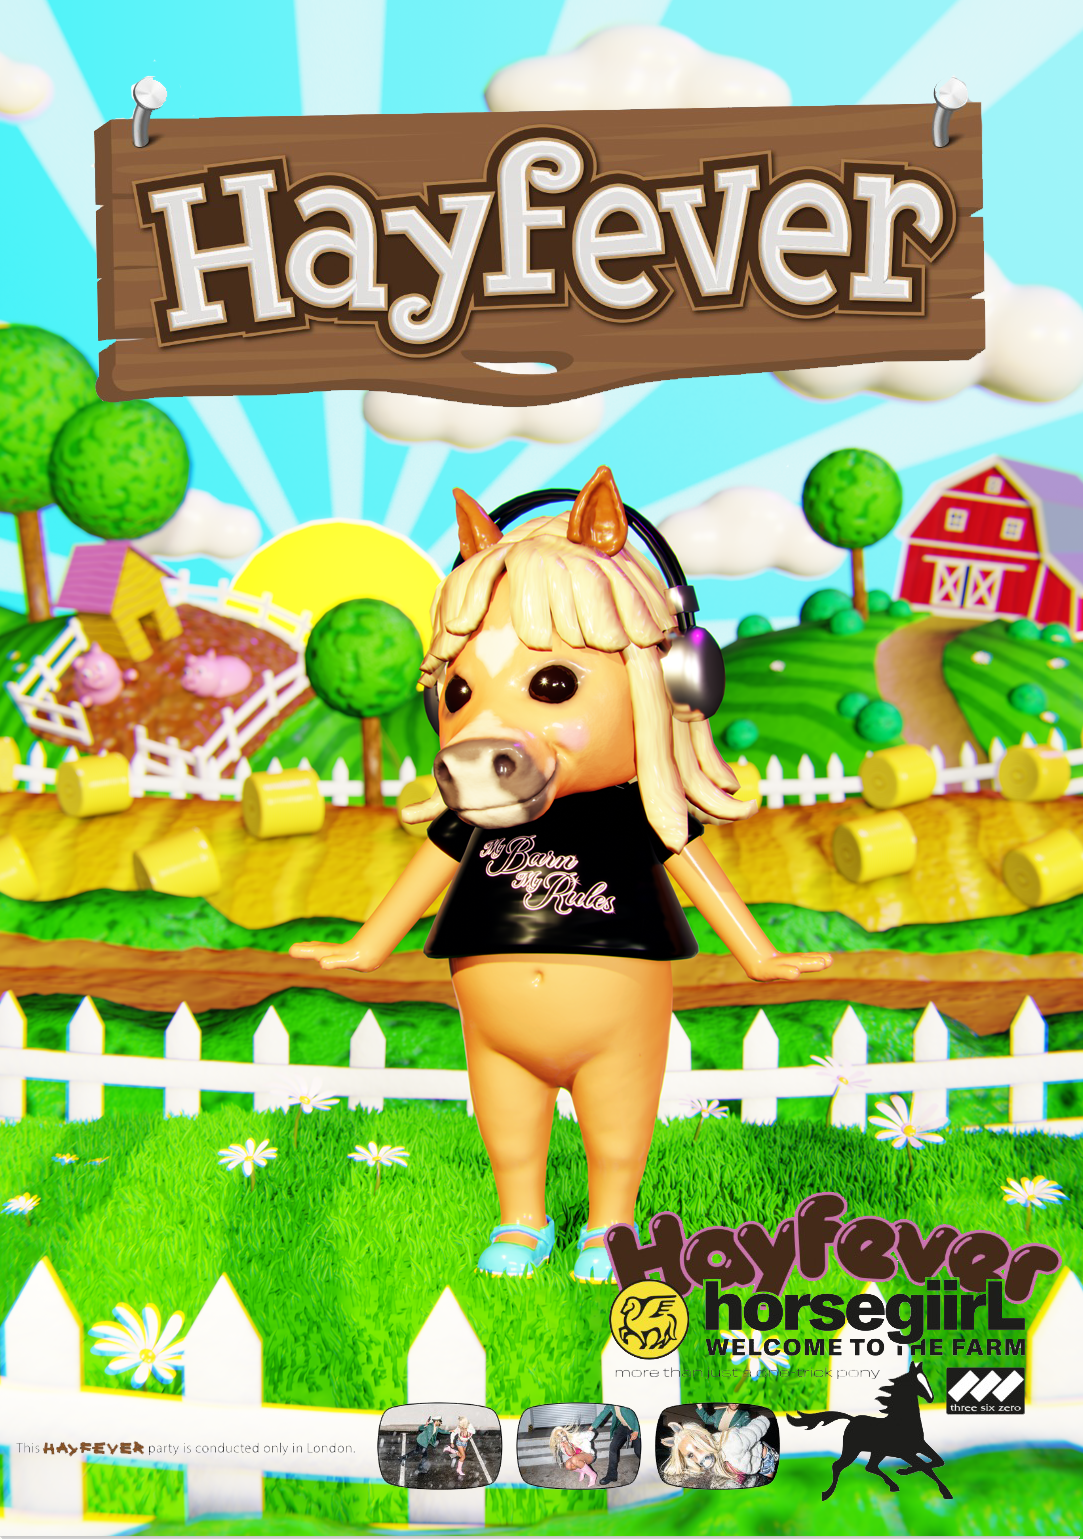 hayfever poster mock up.png